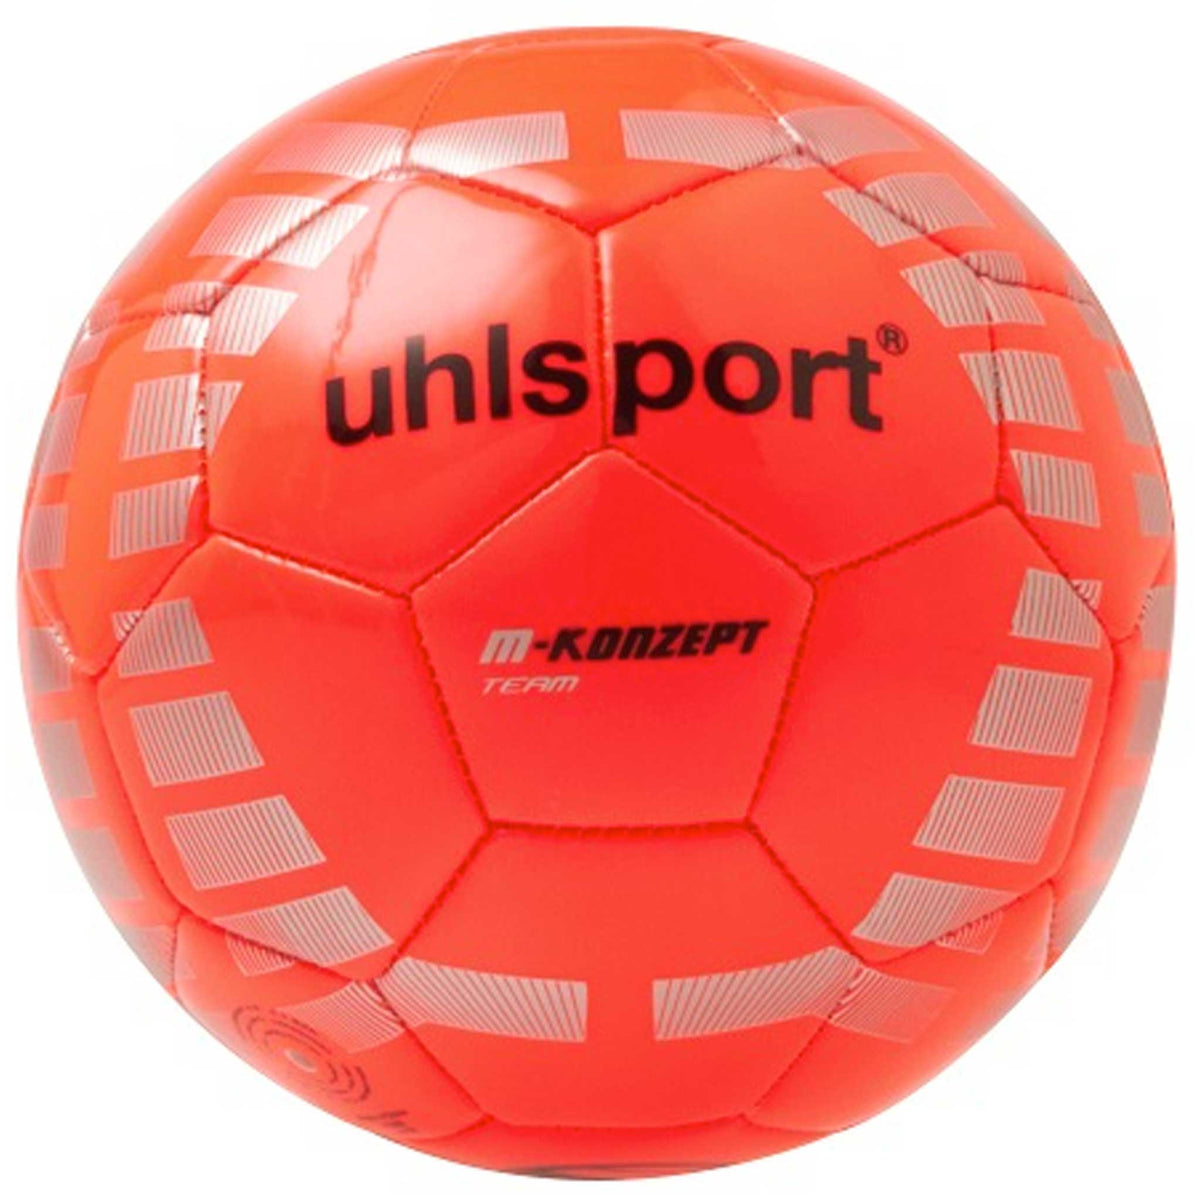 Uhlsport M-konzept Team ballon de soccer